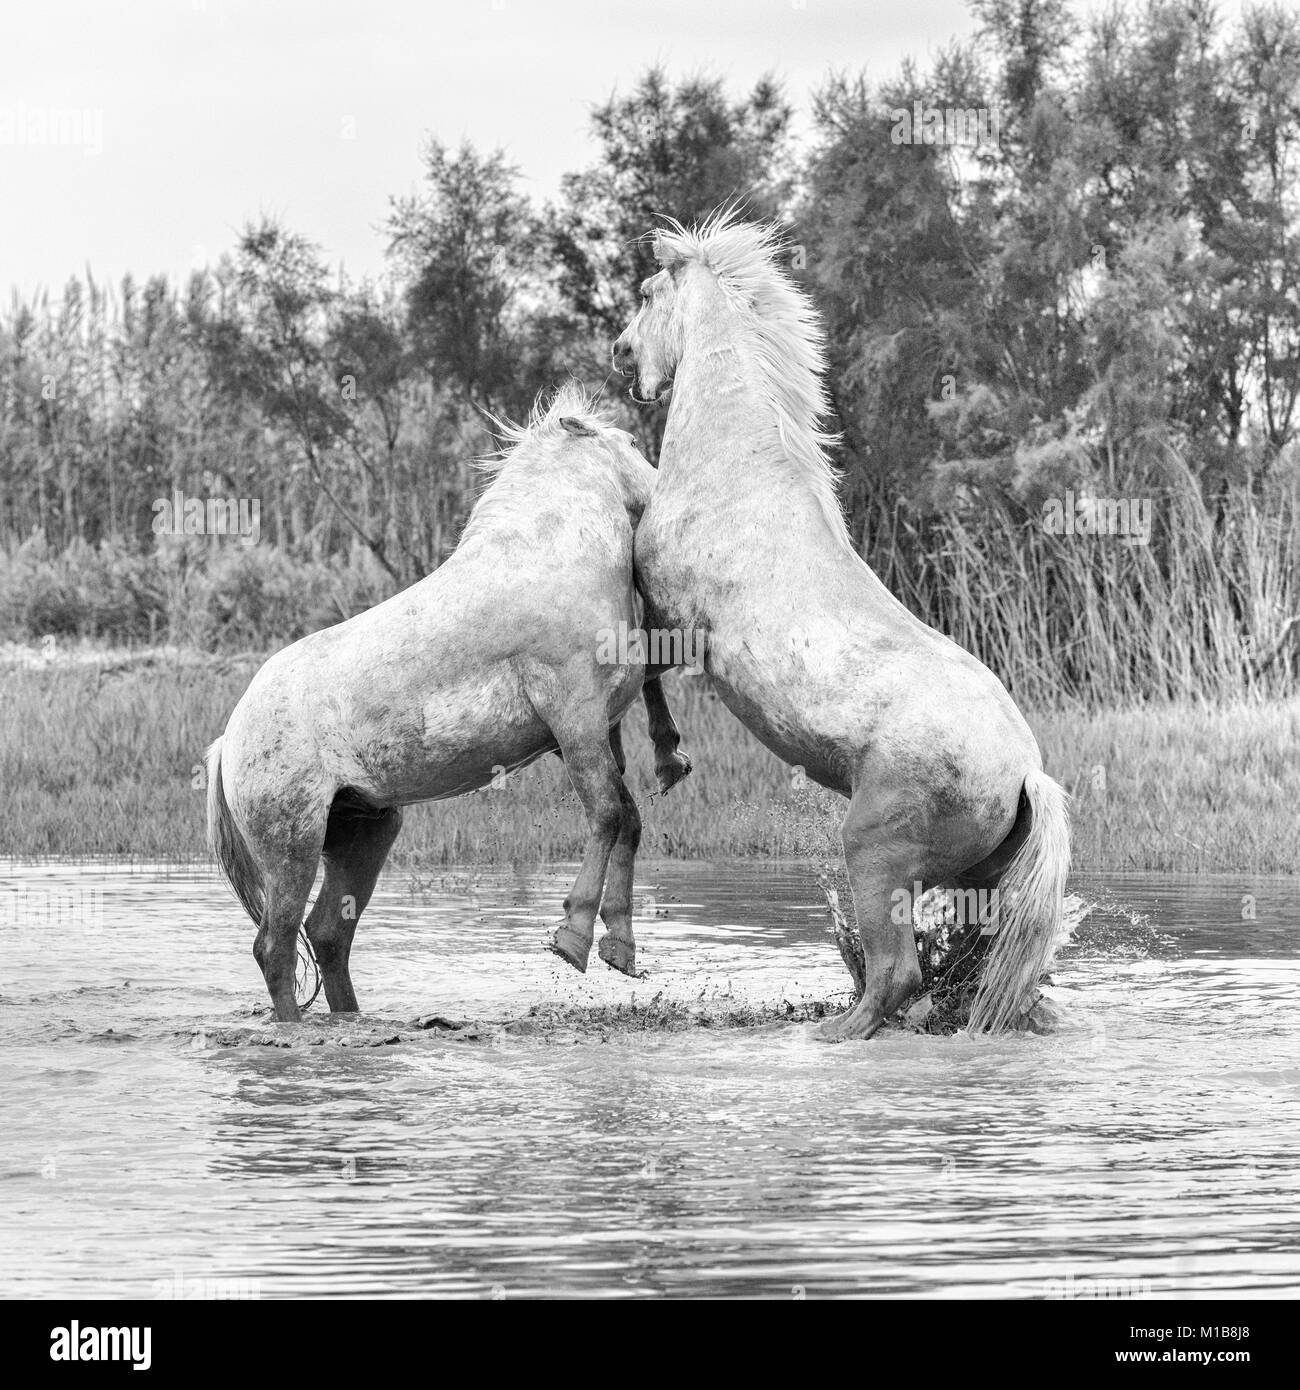 Chevaux Camargue (Equus caballus) etalons, combats dans l'eau près de Saintes Maries-de-la-Mer, Camargue, France, Europe Banque D'Images